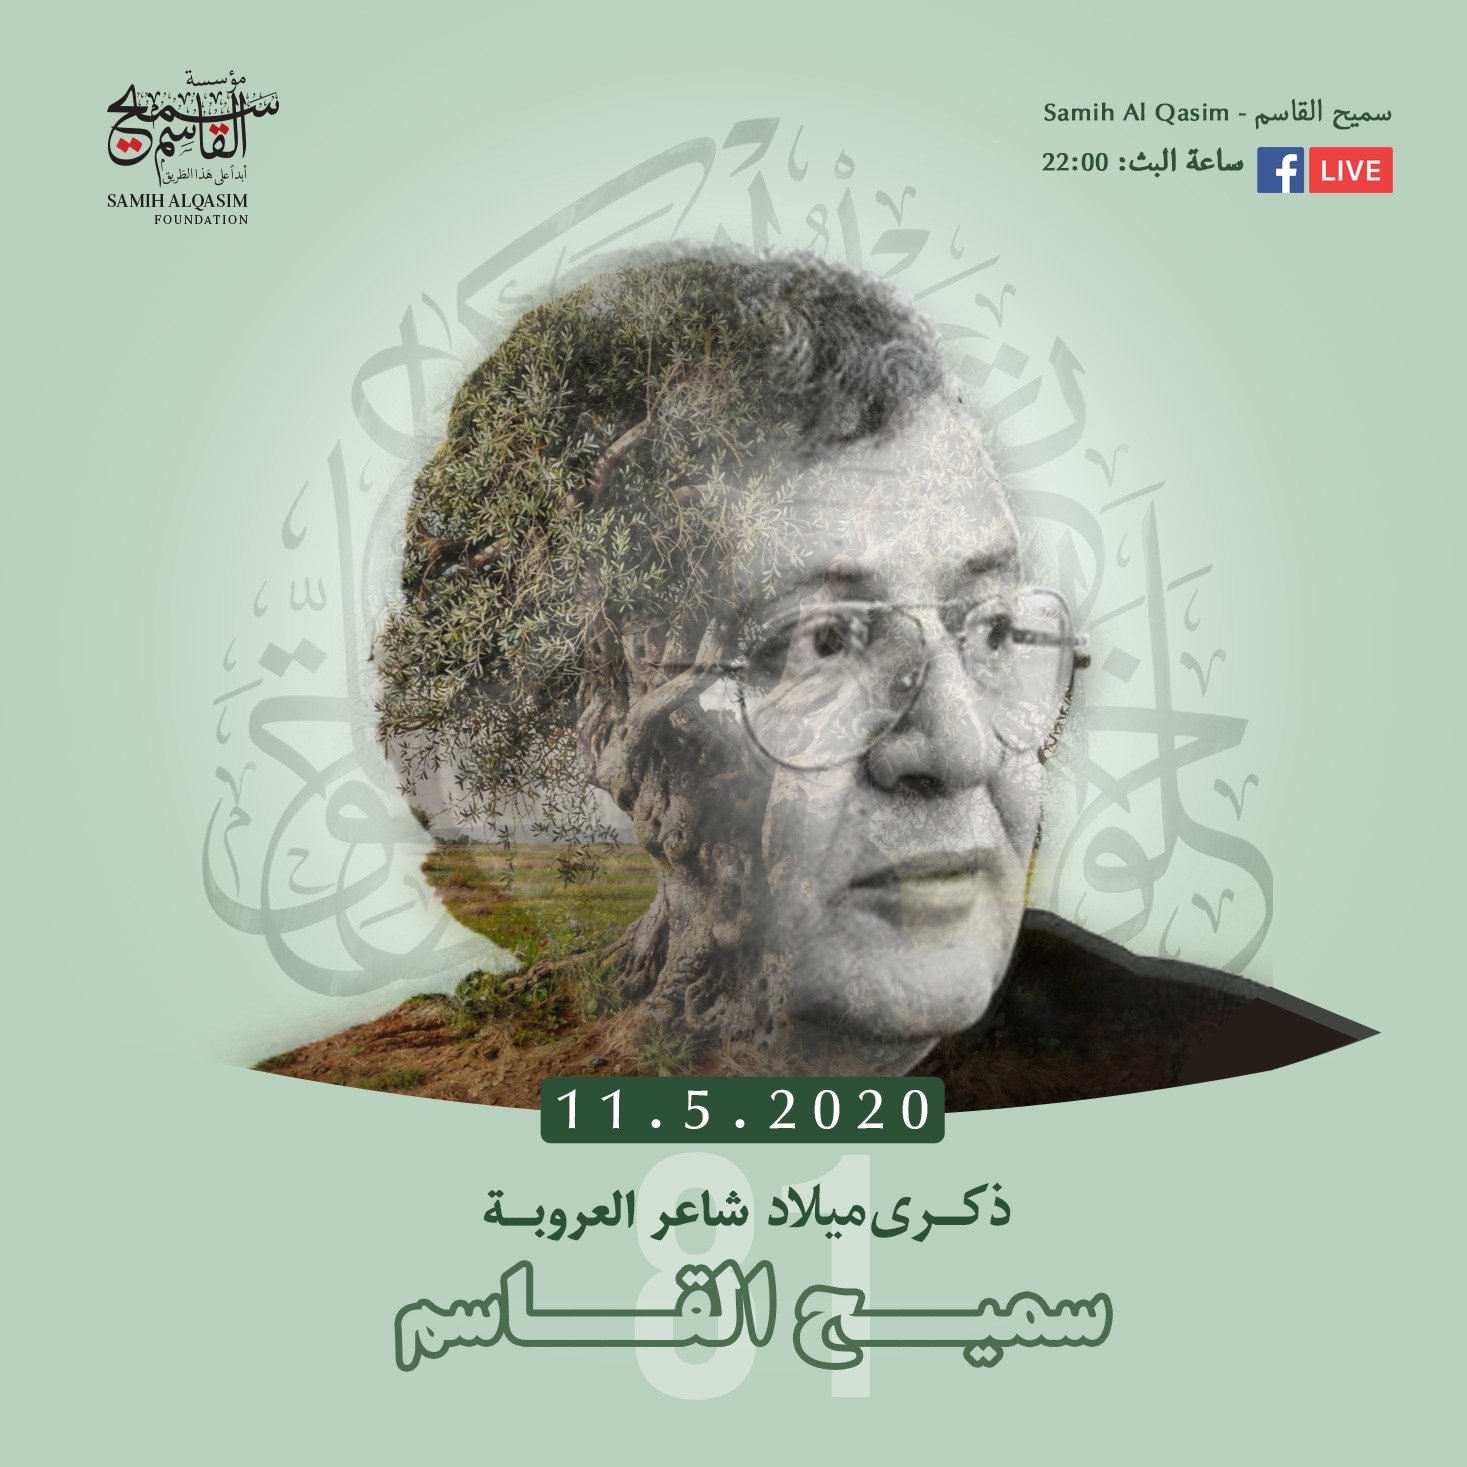 نشر فيديوهات للشاعر الكبير سميح القاسم على الفيسبوك بمناسبة ذكرى ميلاده اليوم-2